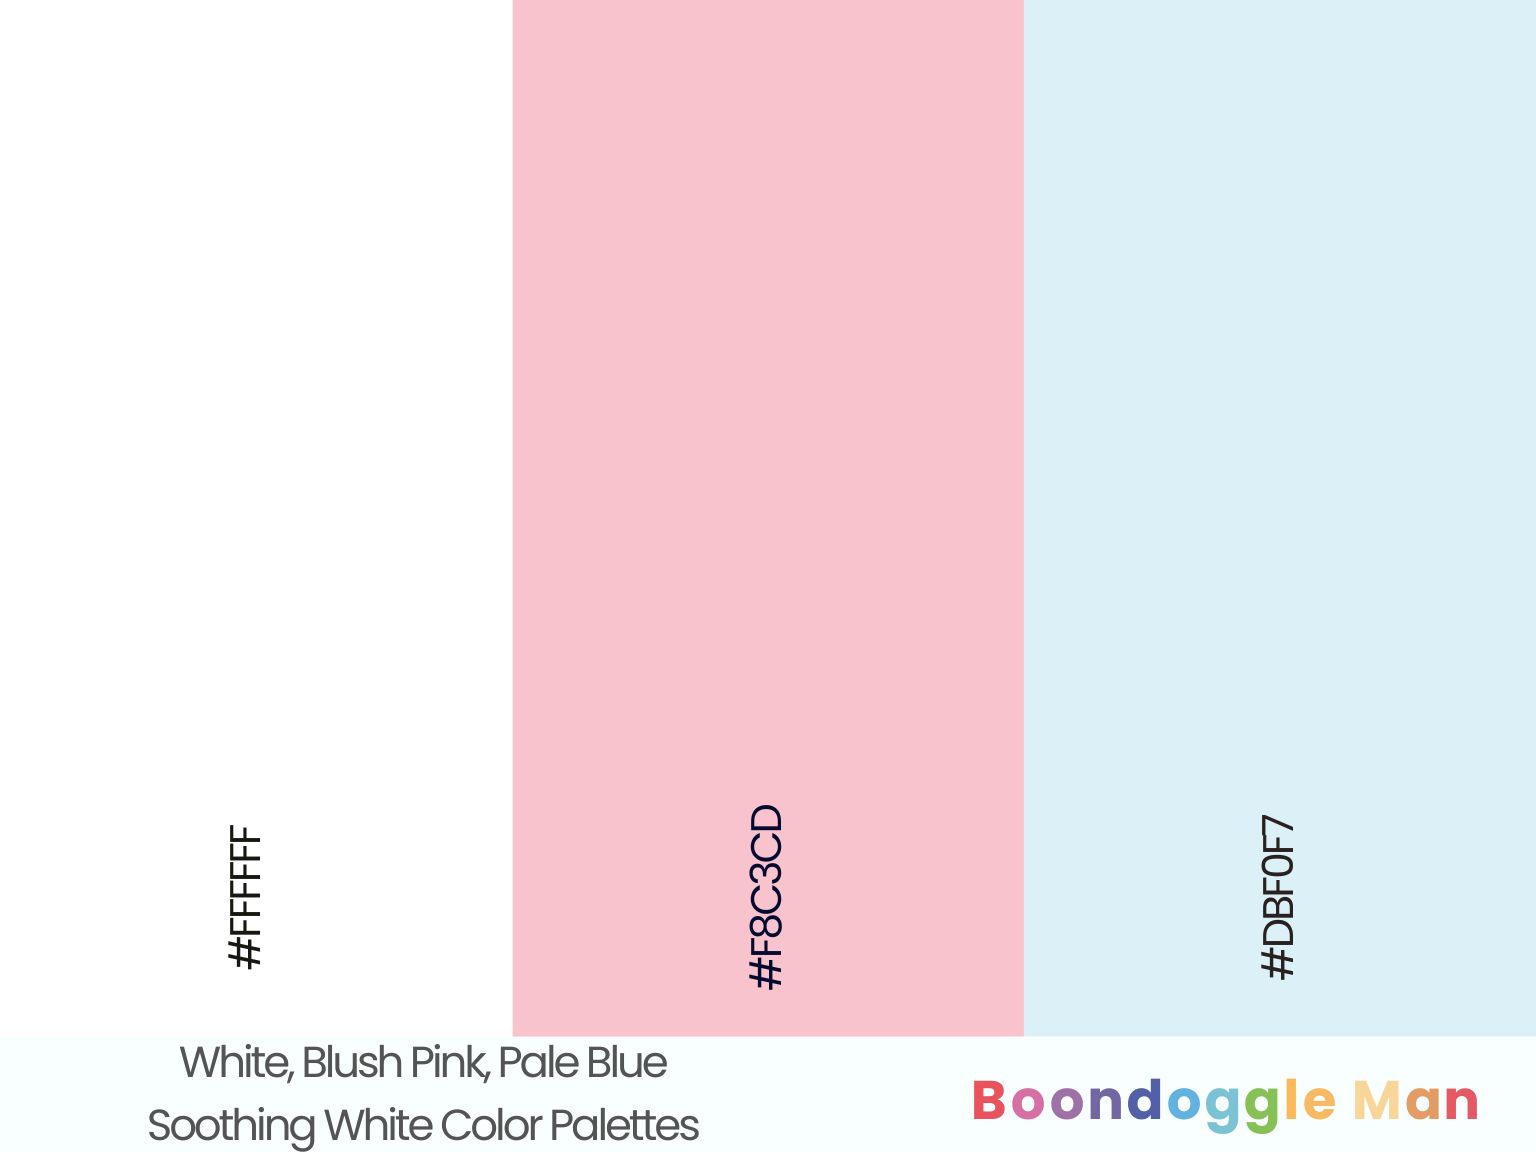 White, Blush Pink, Pale Blue